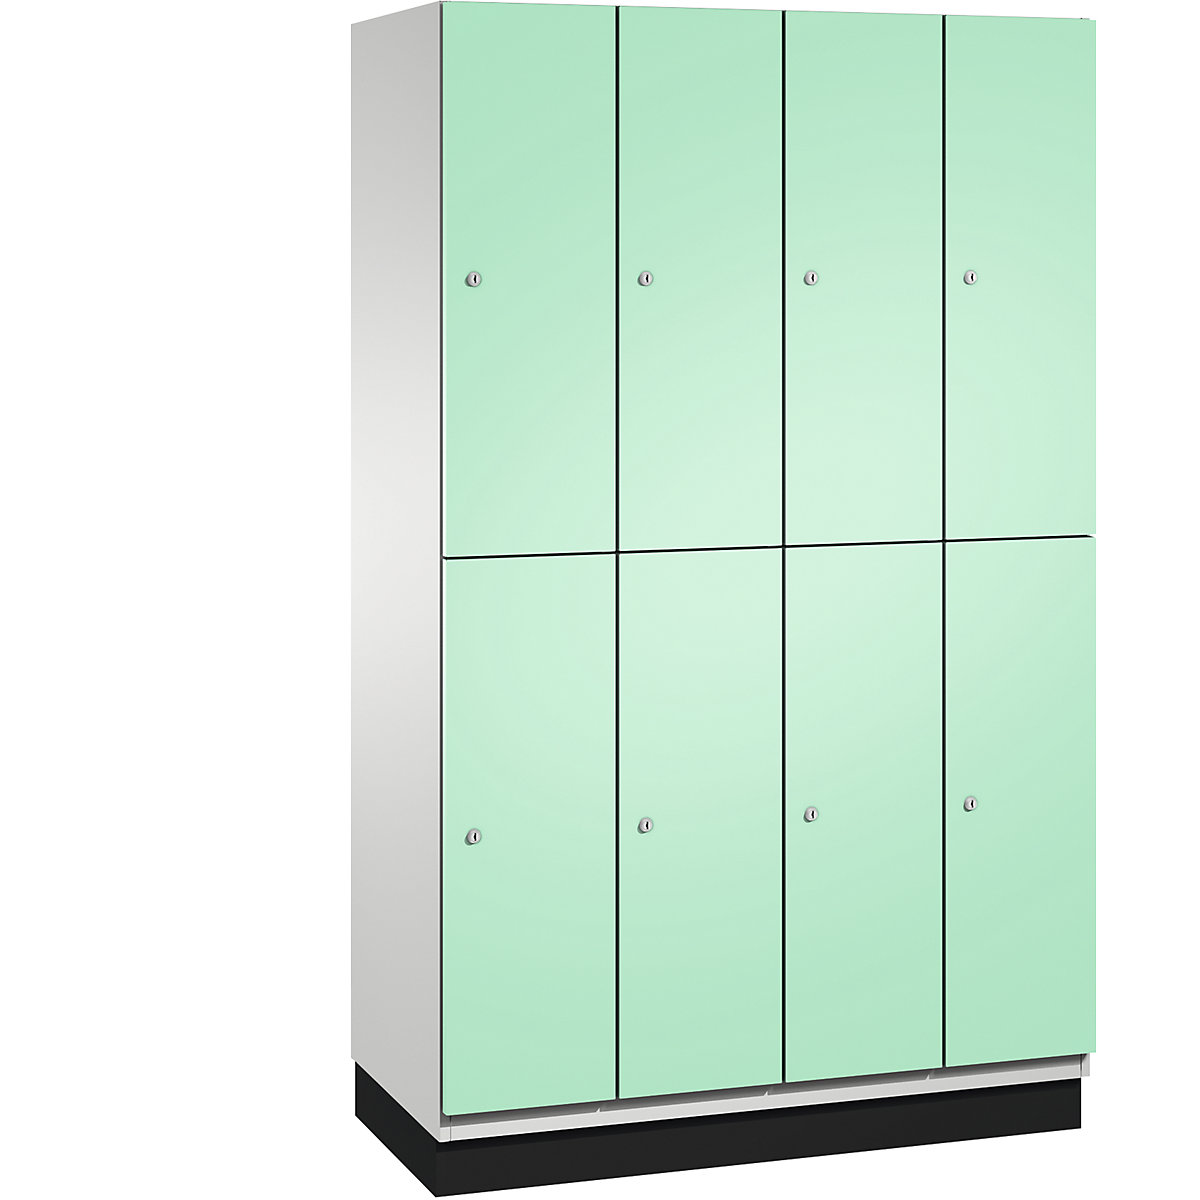 C+P – Skříň s boxy CAMBIO s tyčí na oděvy, 8 boxů, korpus světlý šedý / dveře světlé zelené